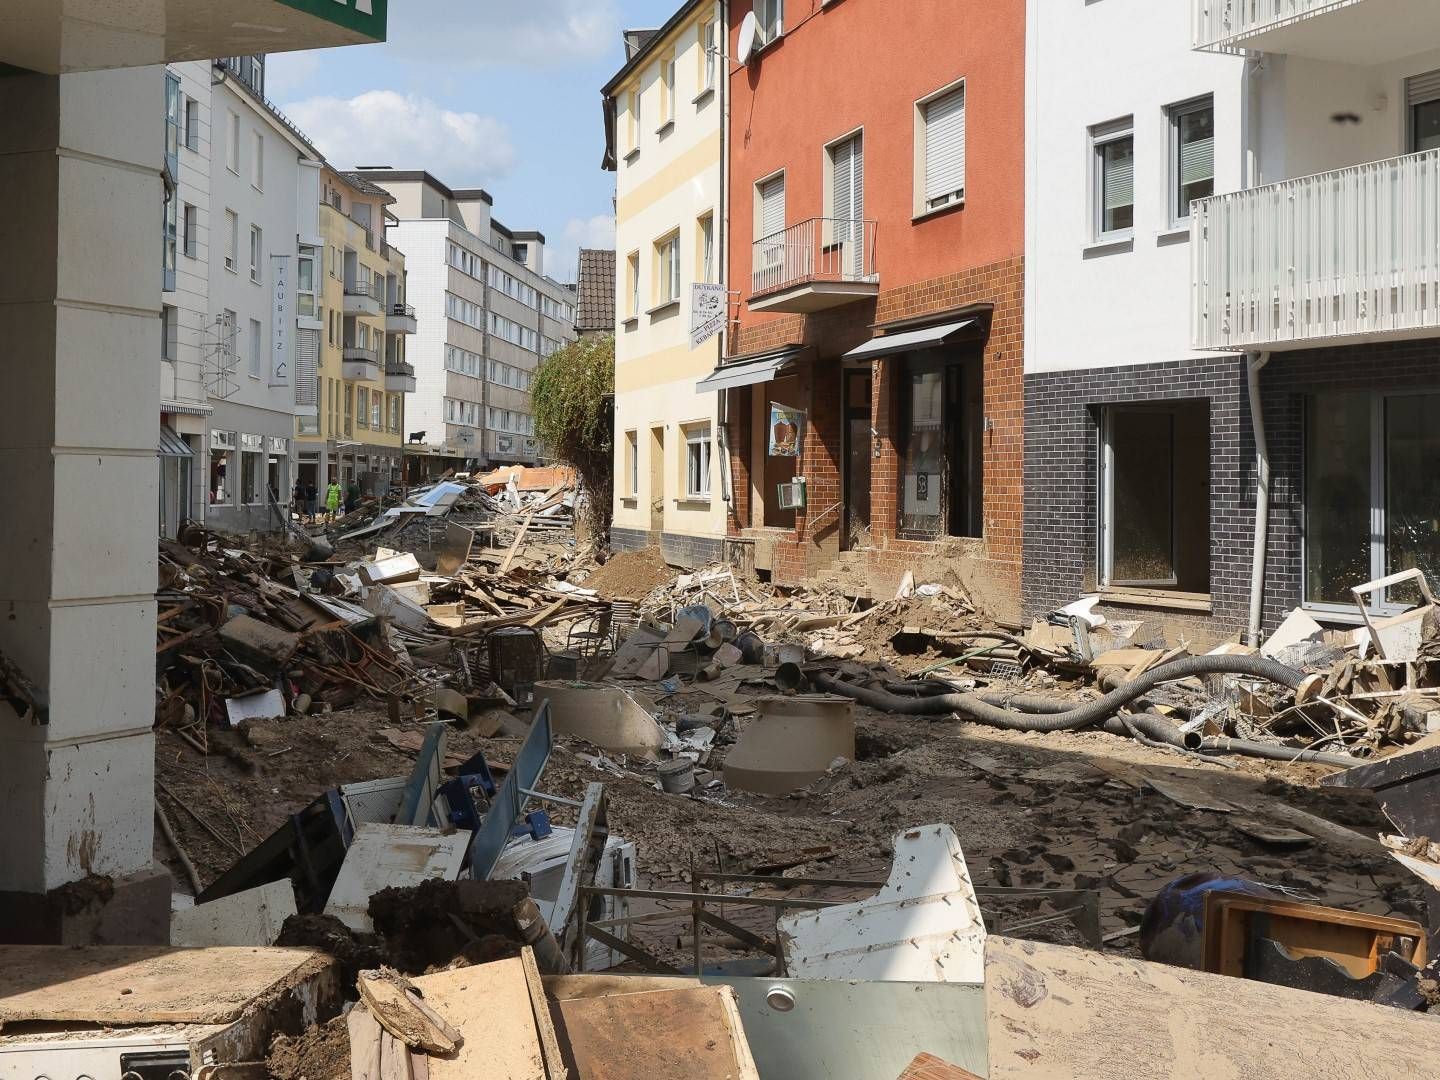 Folgen der Flutkatastrophe in Bad Neuenahr. | Foto: picture alliance / Eibner-Pressefoto | Joerg Niebergall/Eibner-Pressefo